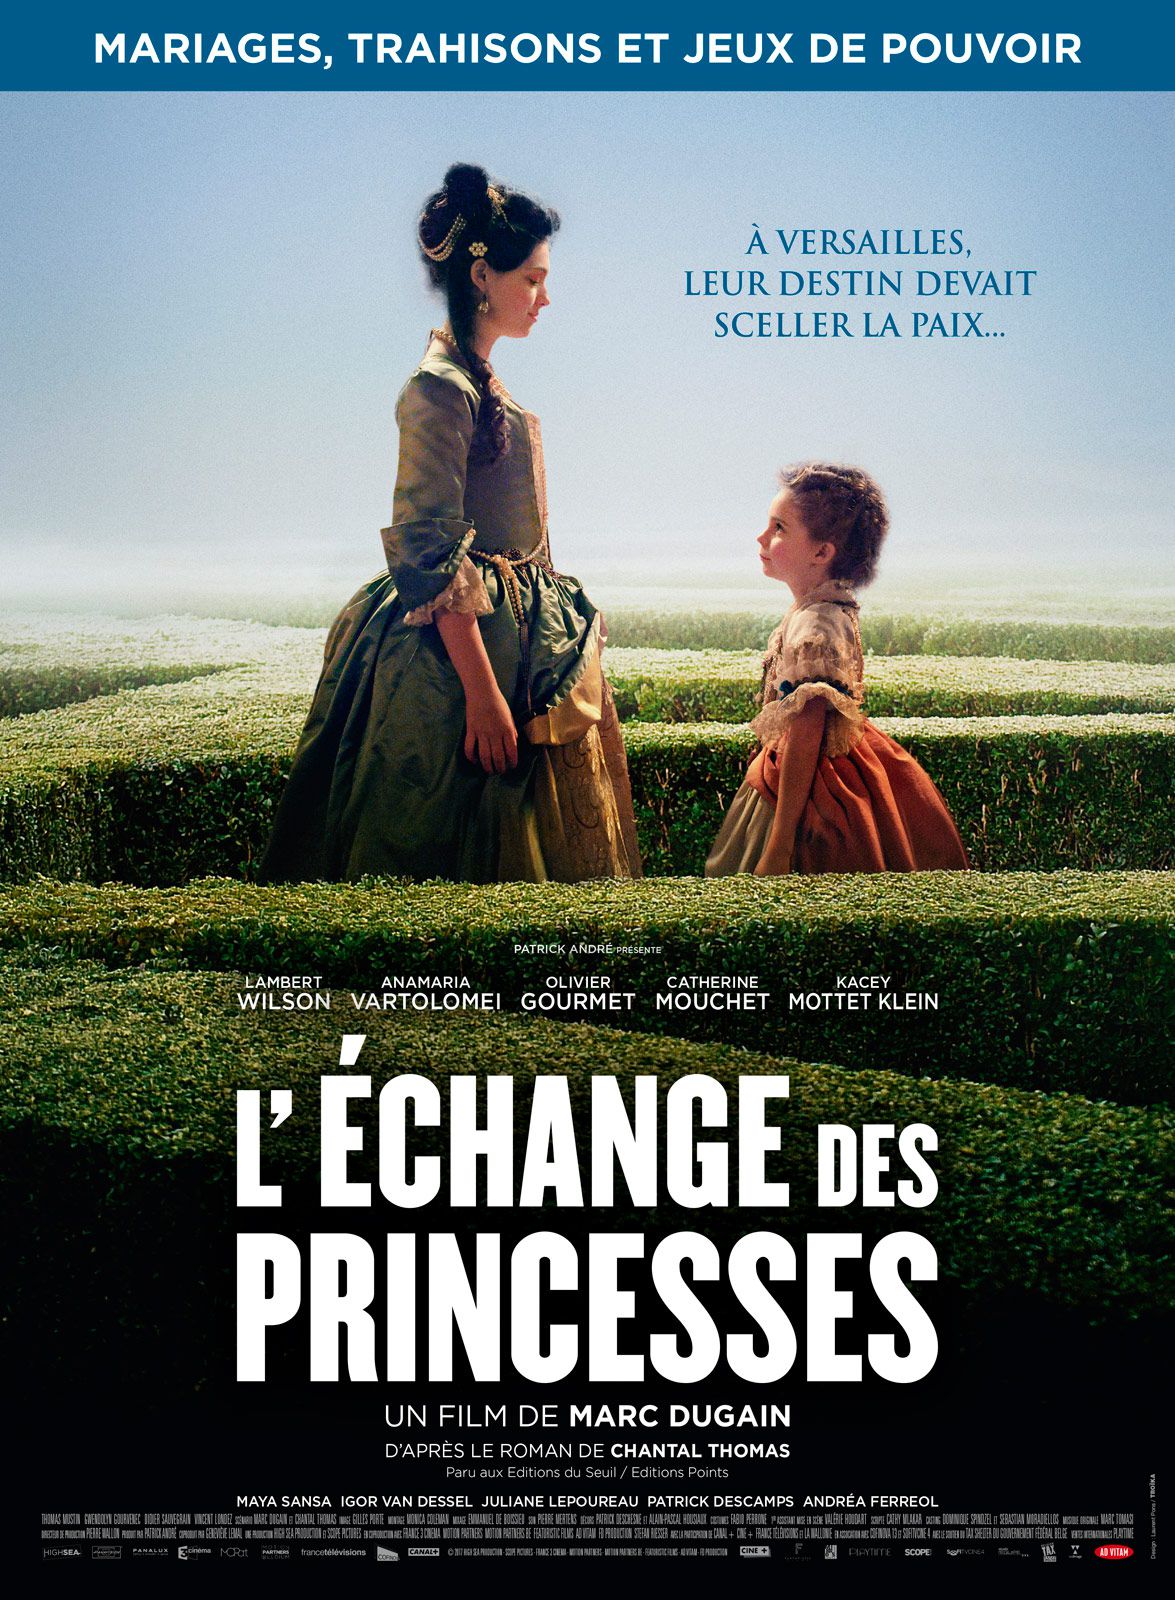 L'Échange des princesses - Film (2017) streaming VF gratuit complet